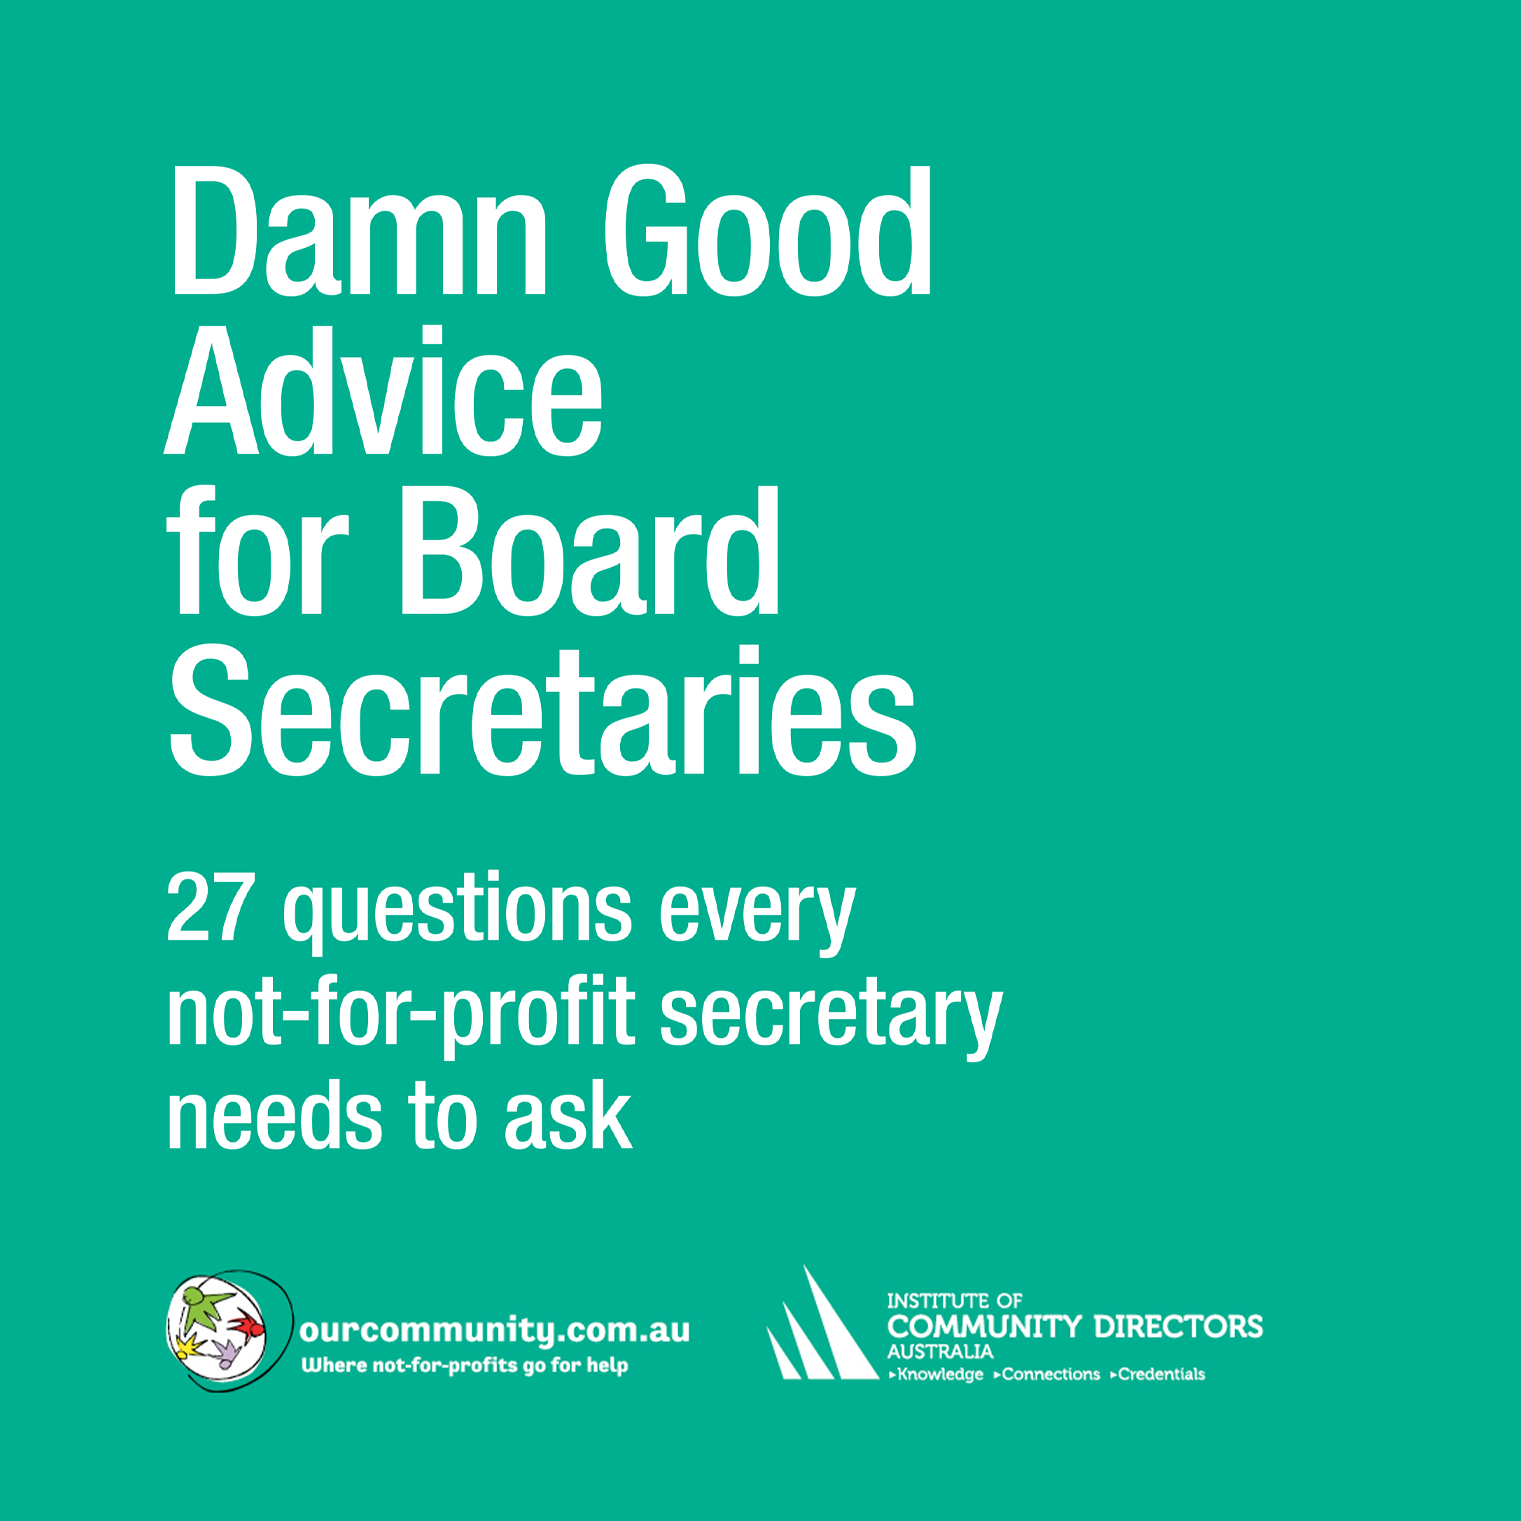 Damn Good Advice for Board Secretaries